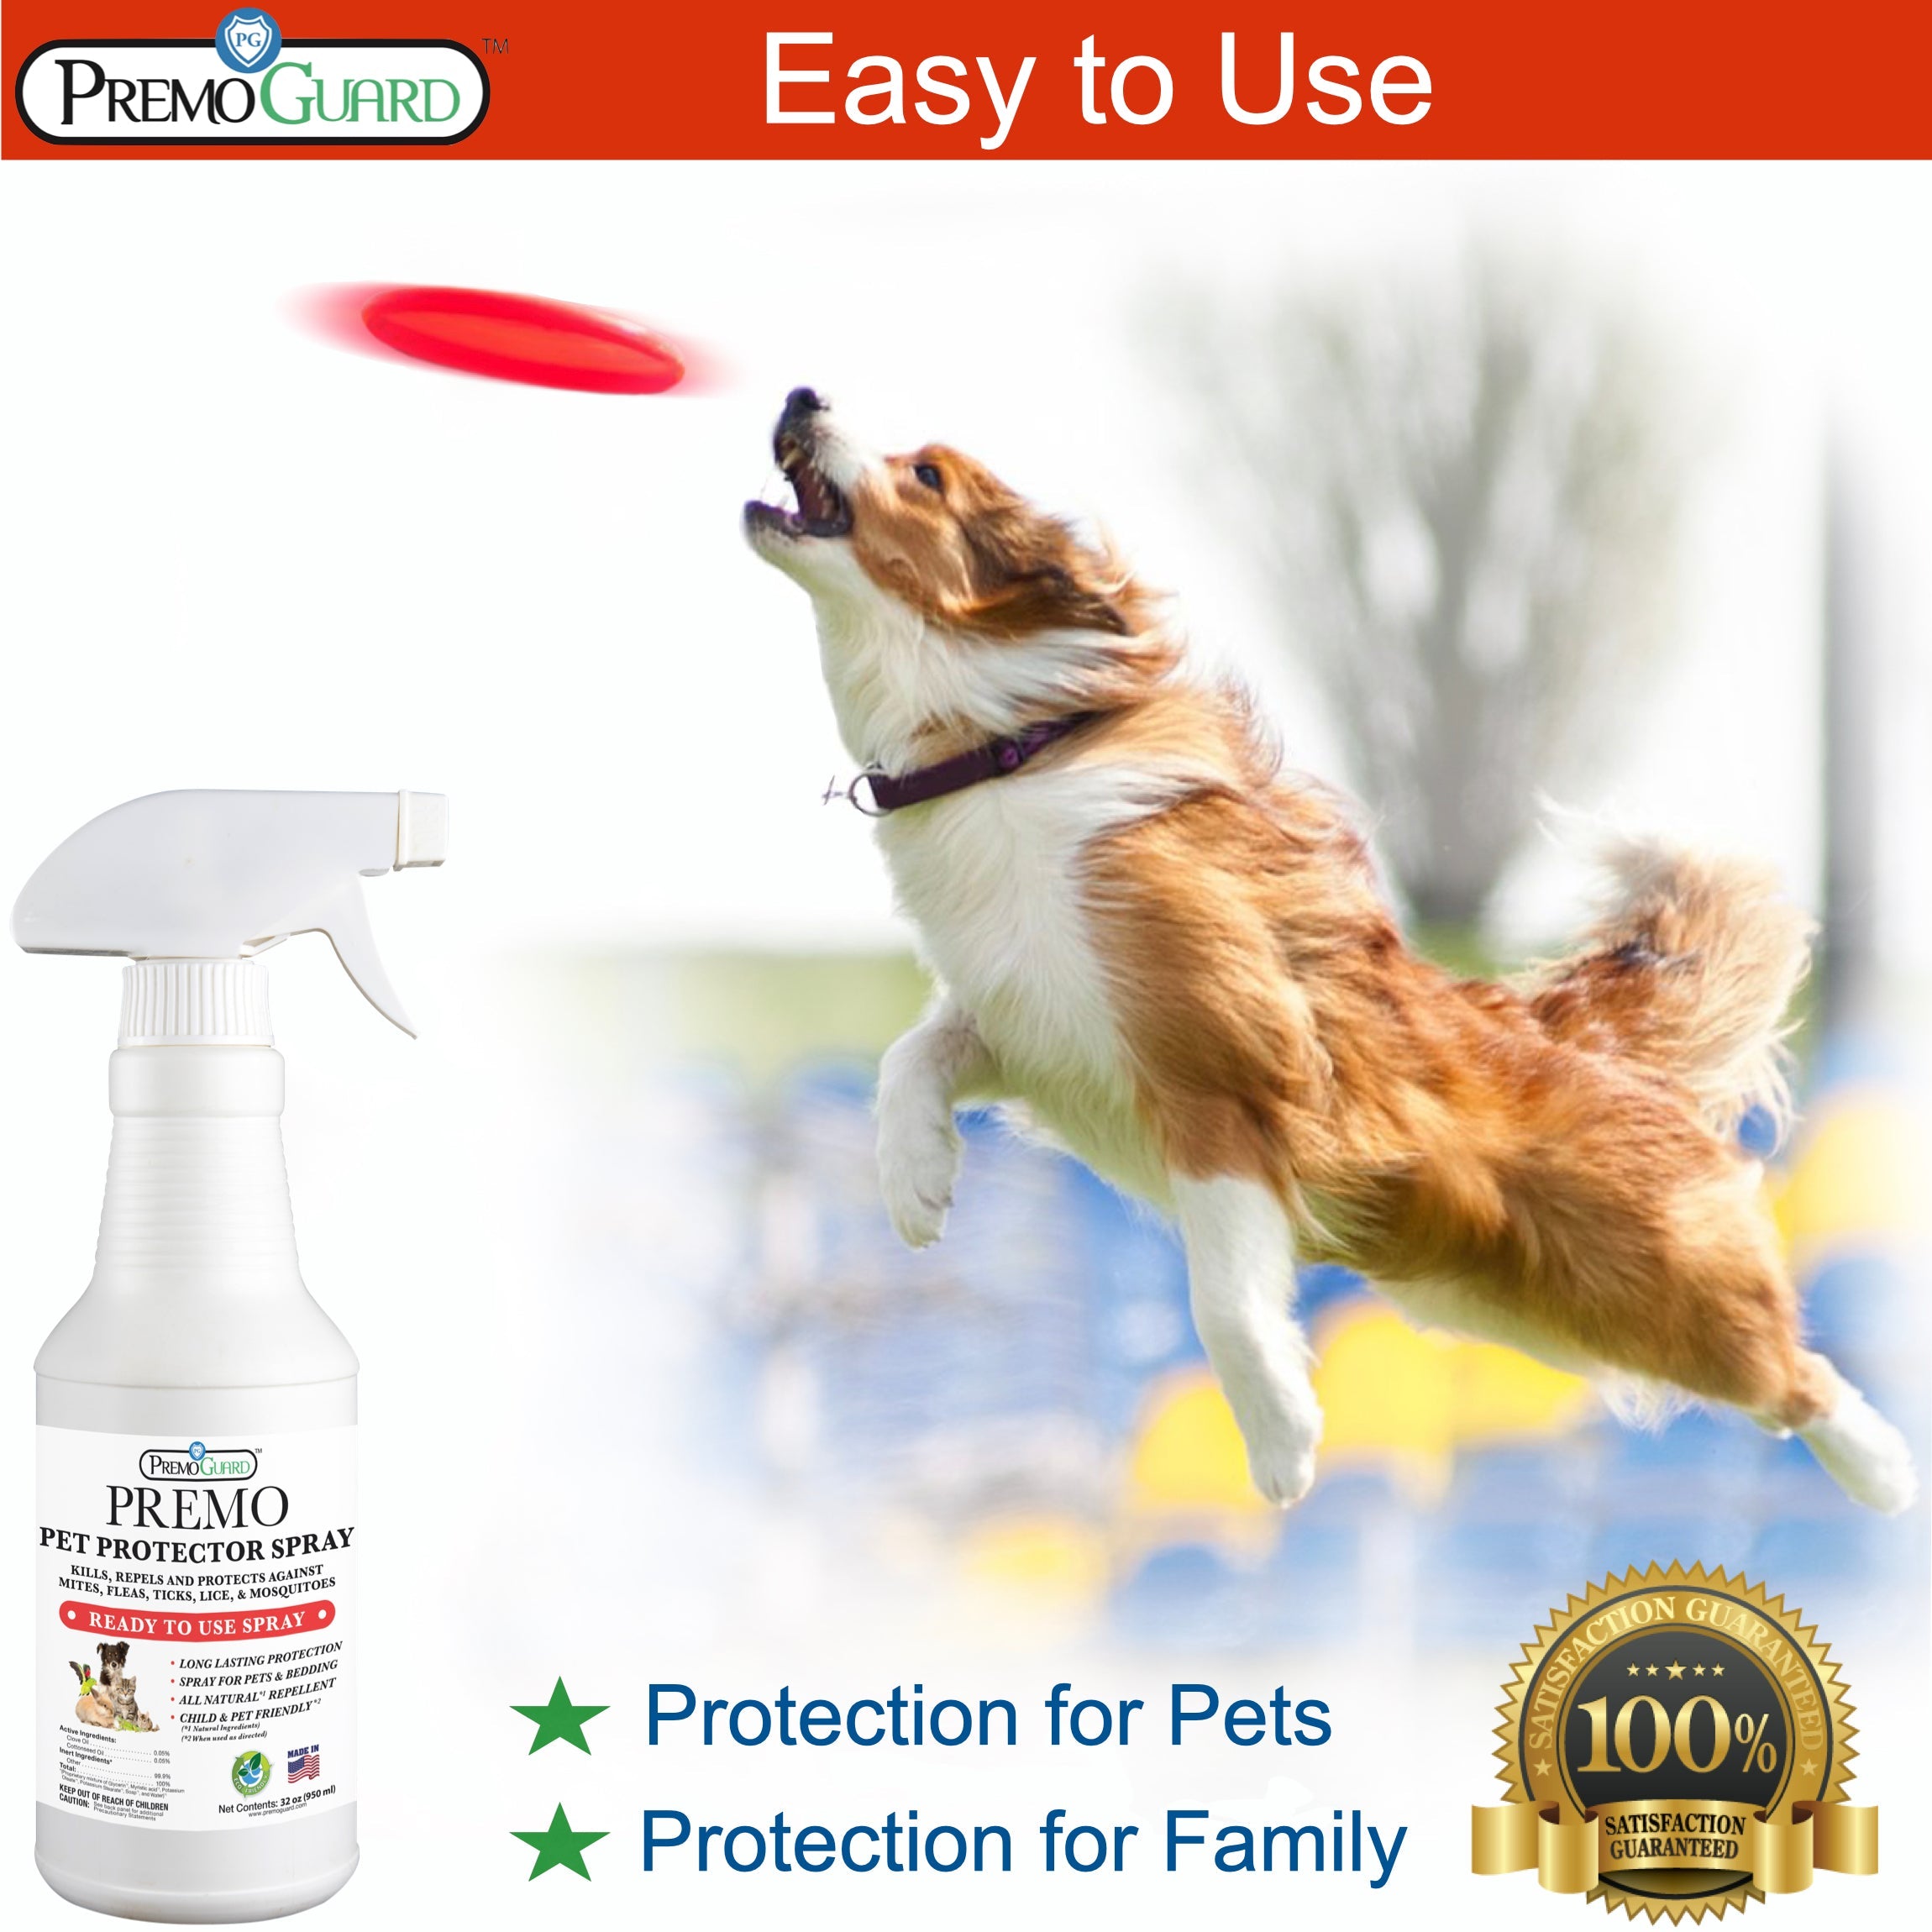 Pet Protector Spray by Premo Guard - 32 oz